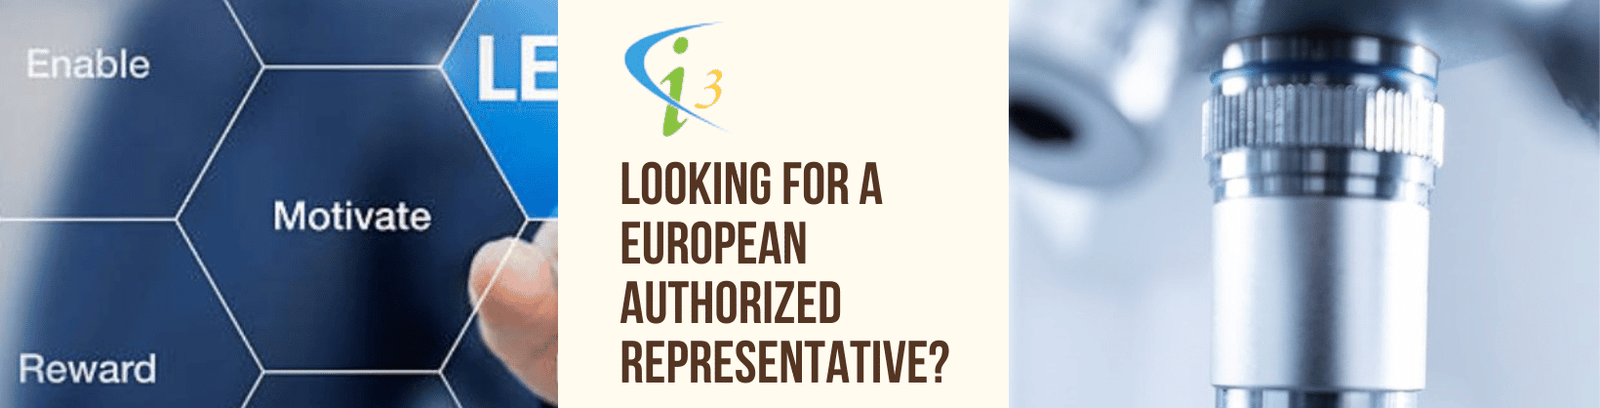 european authorised representative